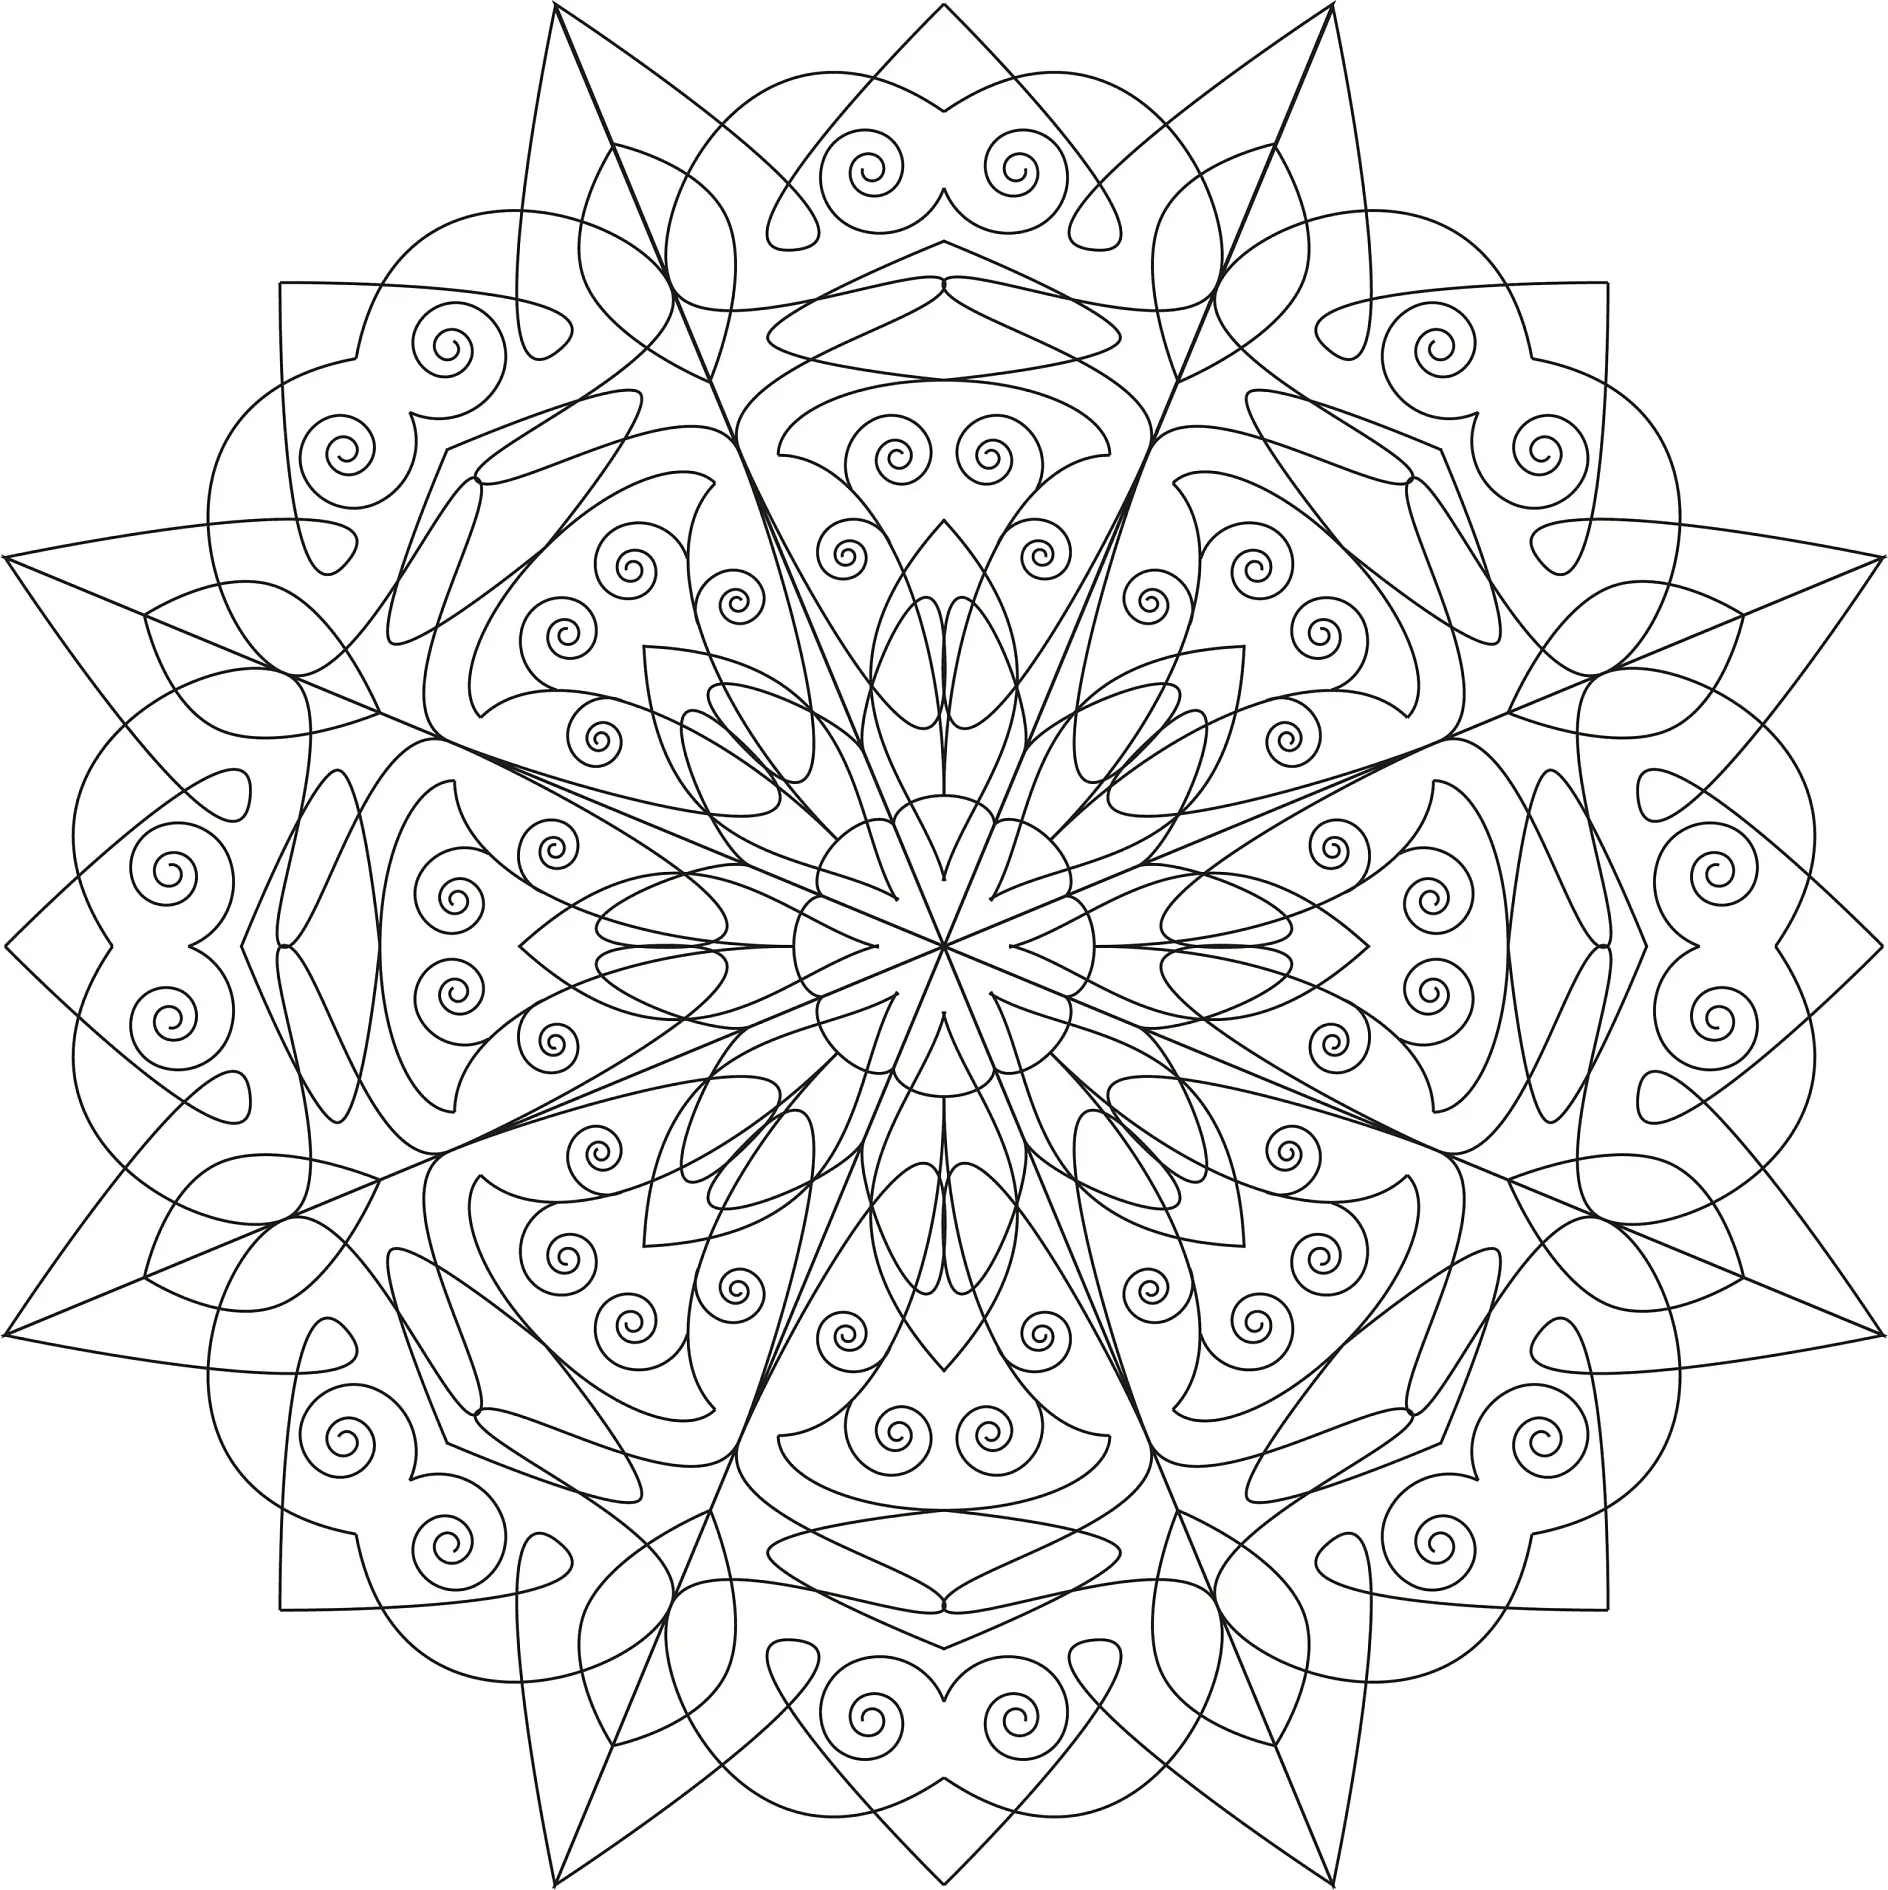 Ausmalbild Mandala mit Spiralen und Blütenmuster